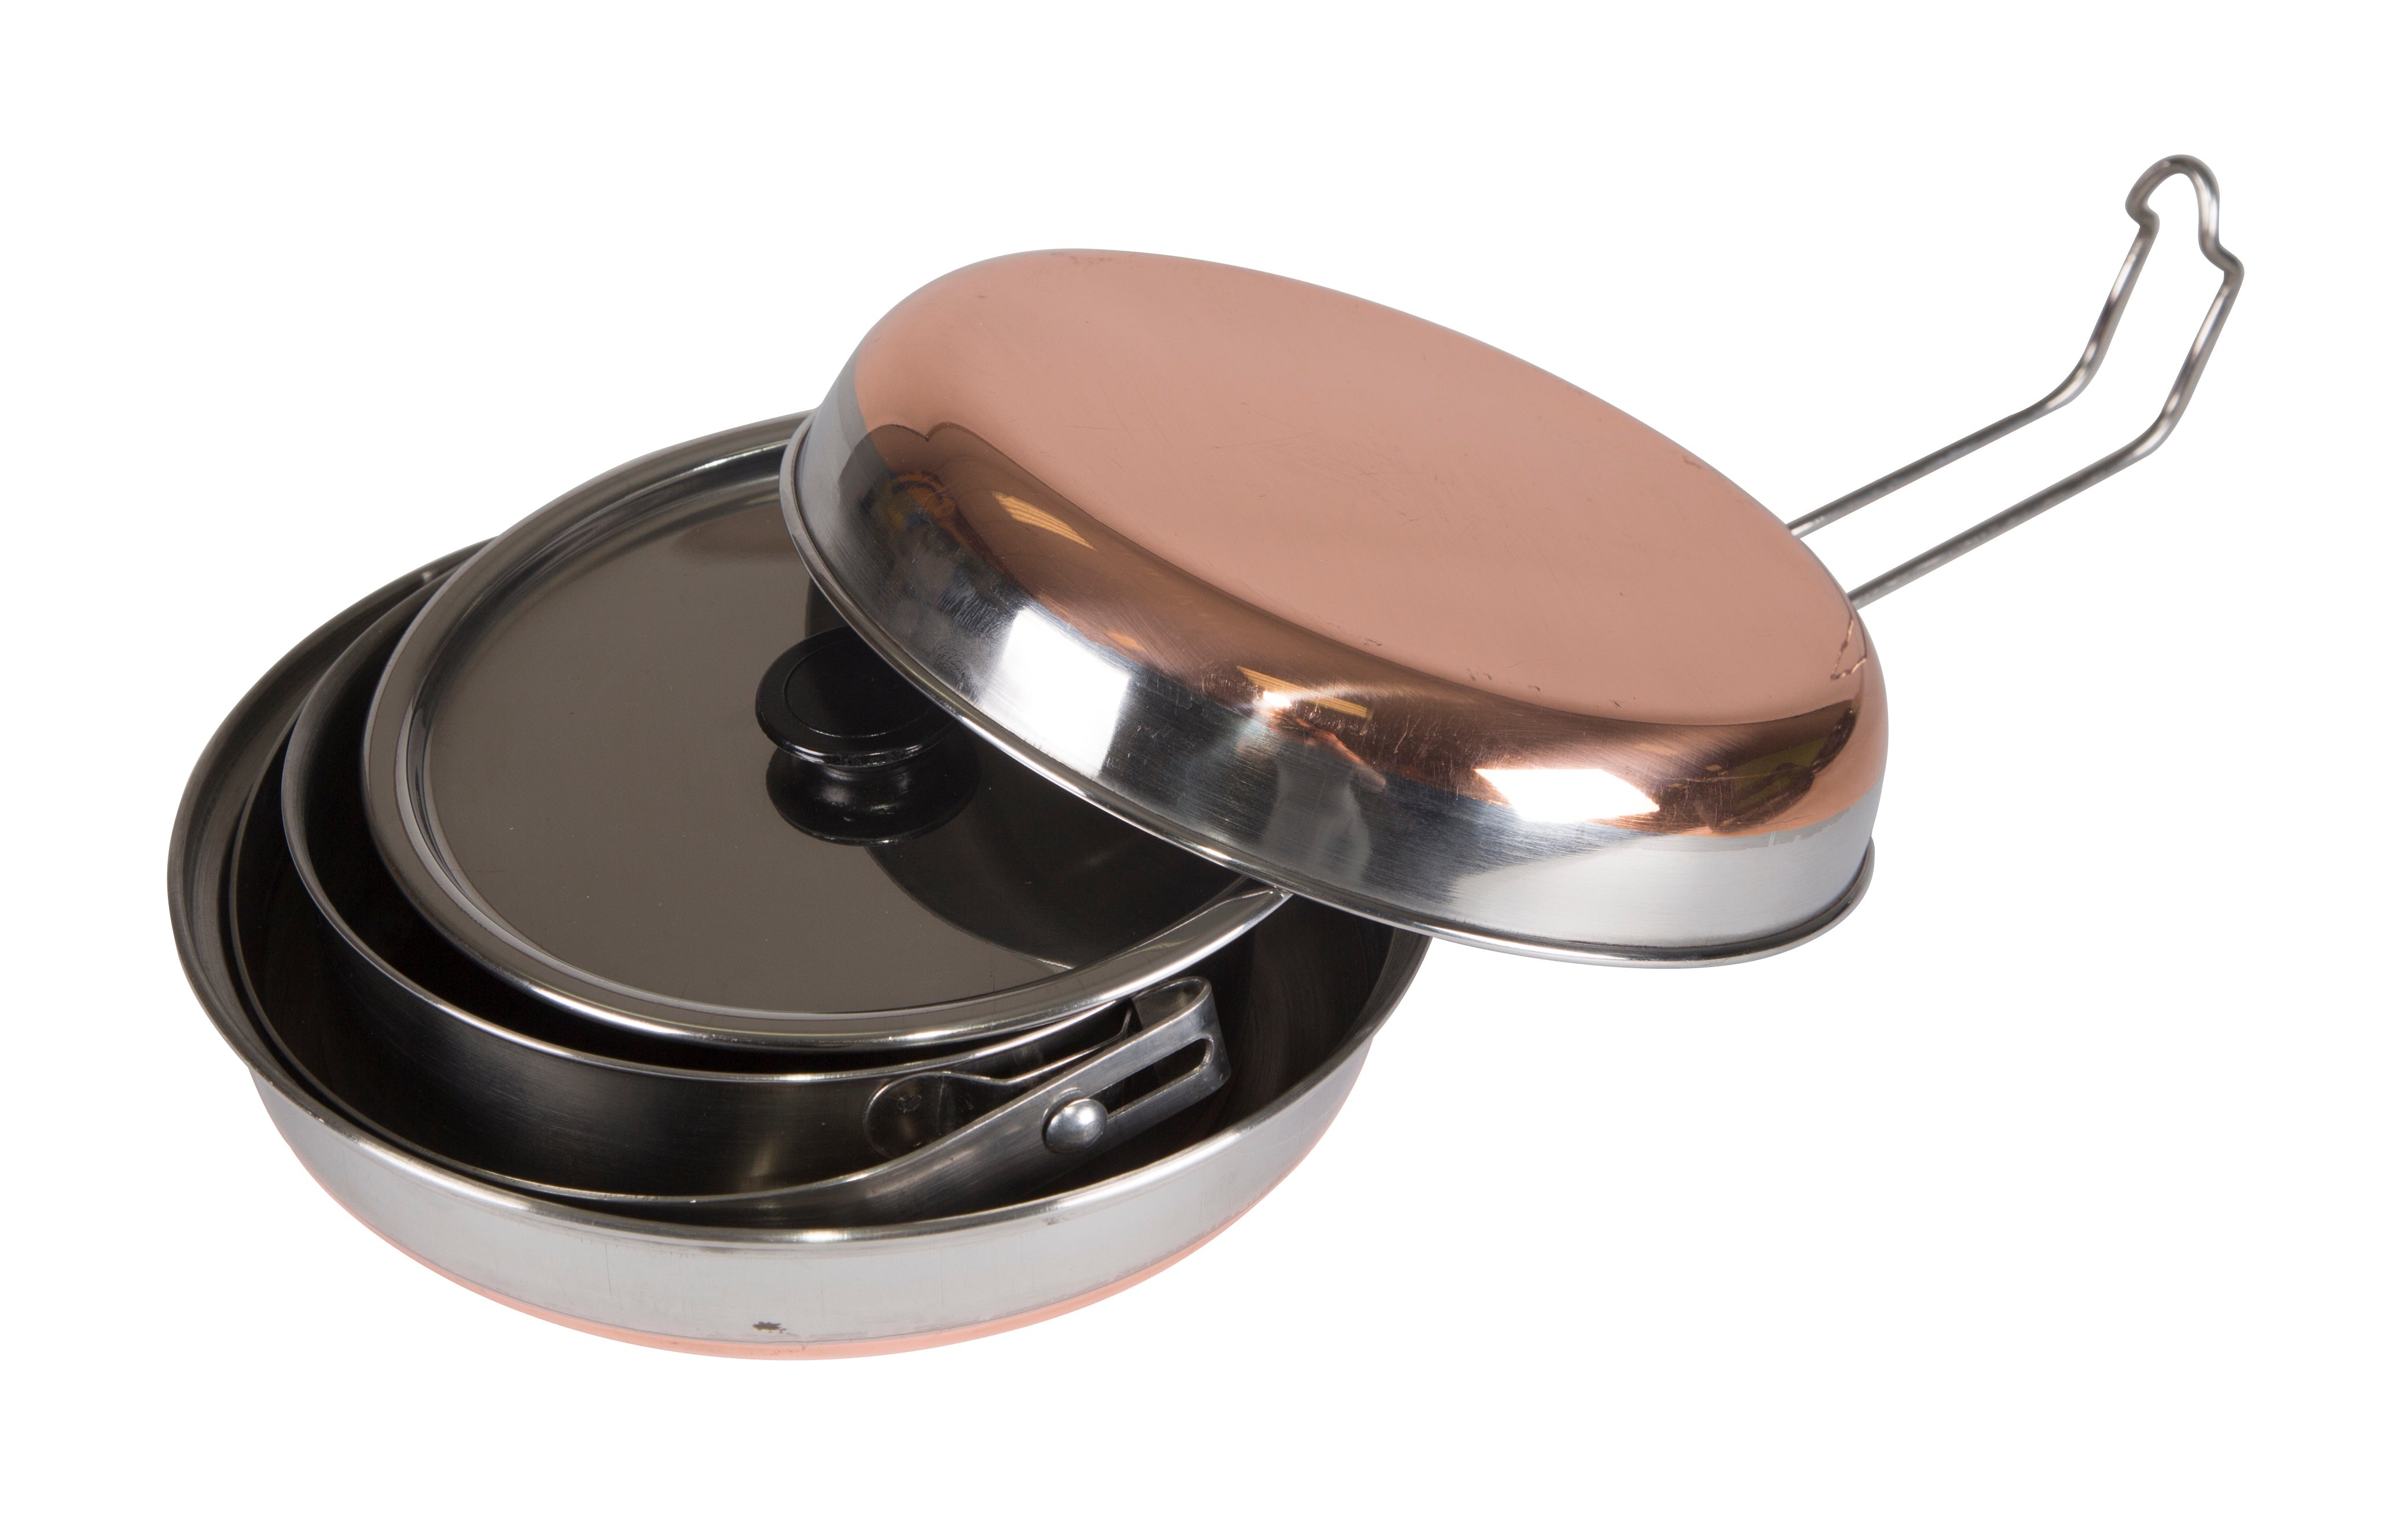 Stainless Steel Mess Kit - 1 Pan, 1 Saucepan, 1 Plate